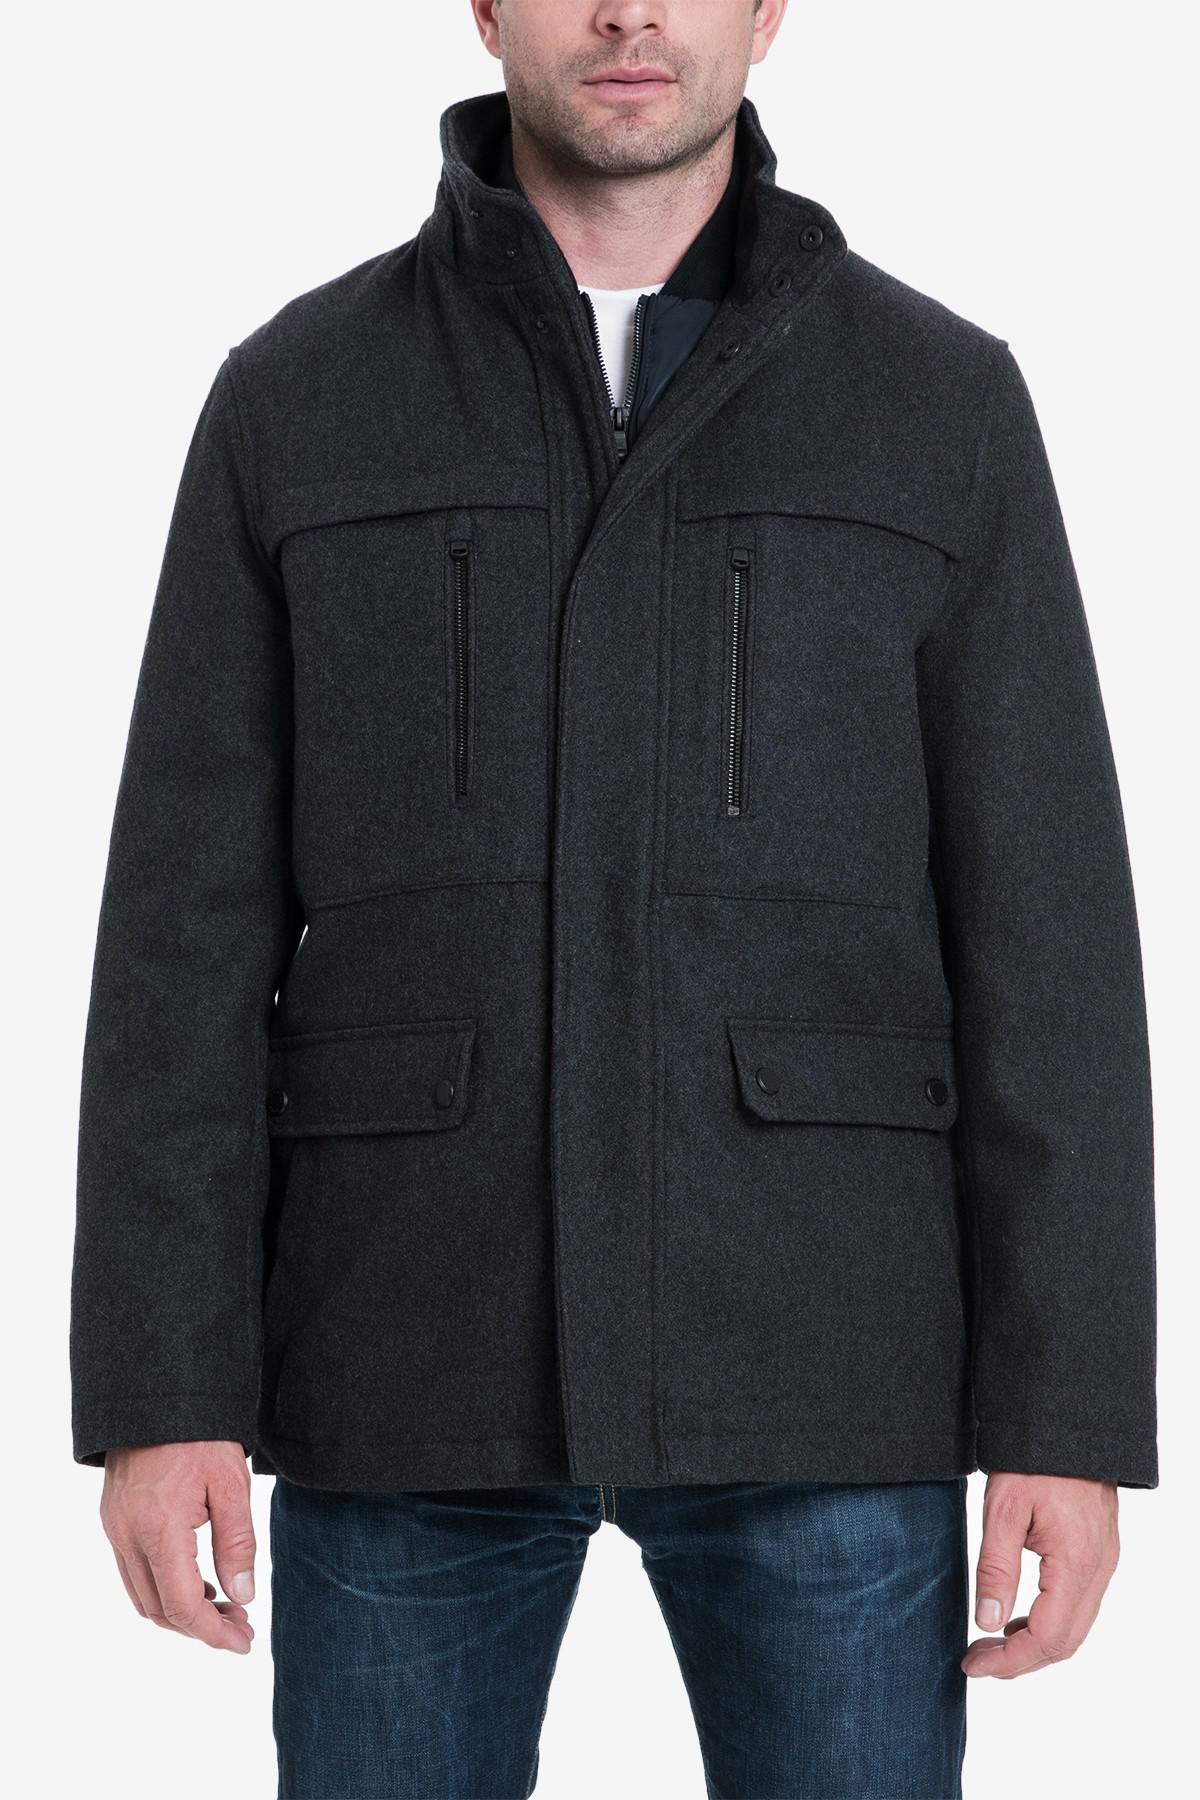 michael kors jefferson wool blend multi pocket jacket